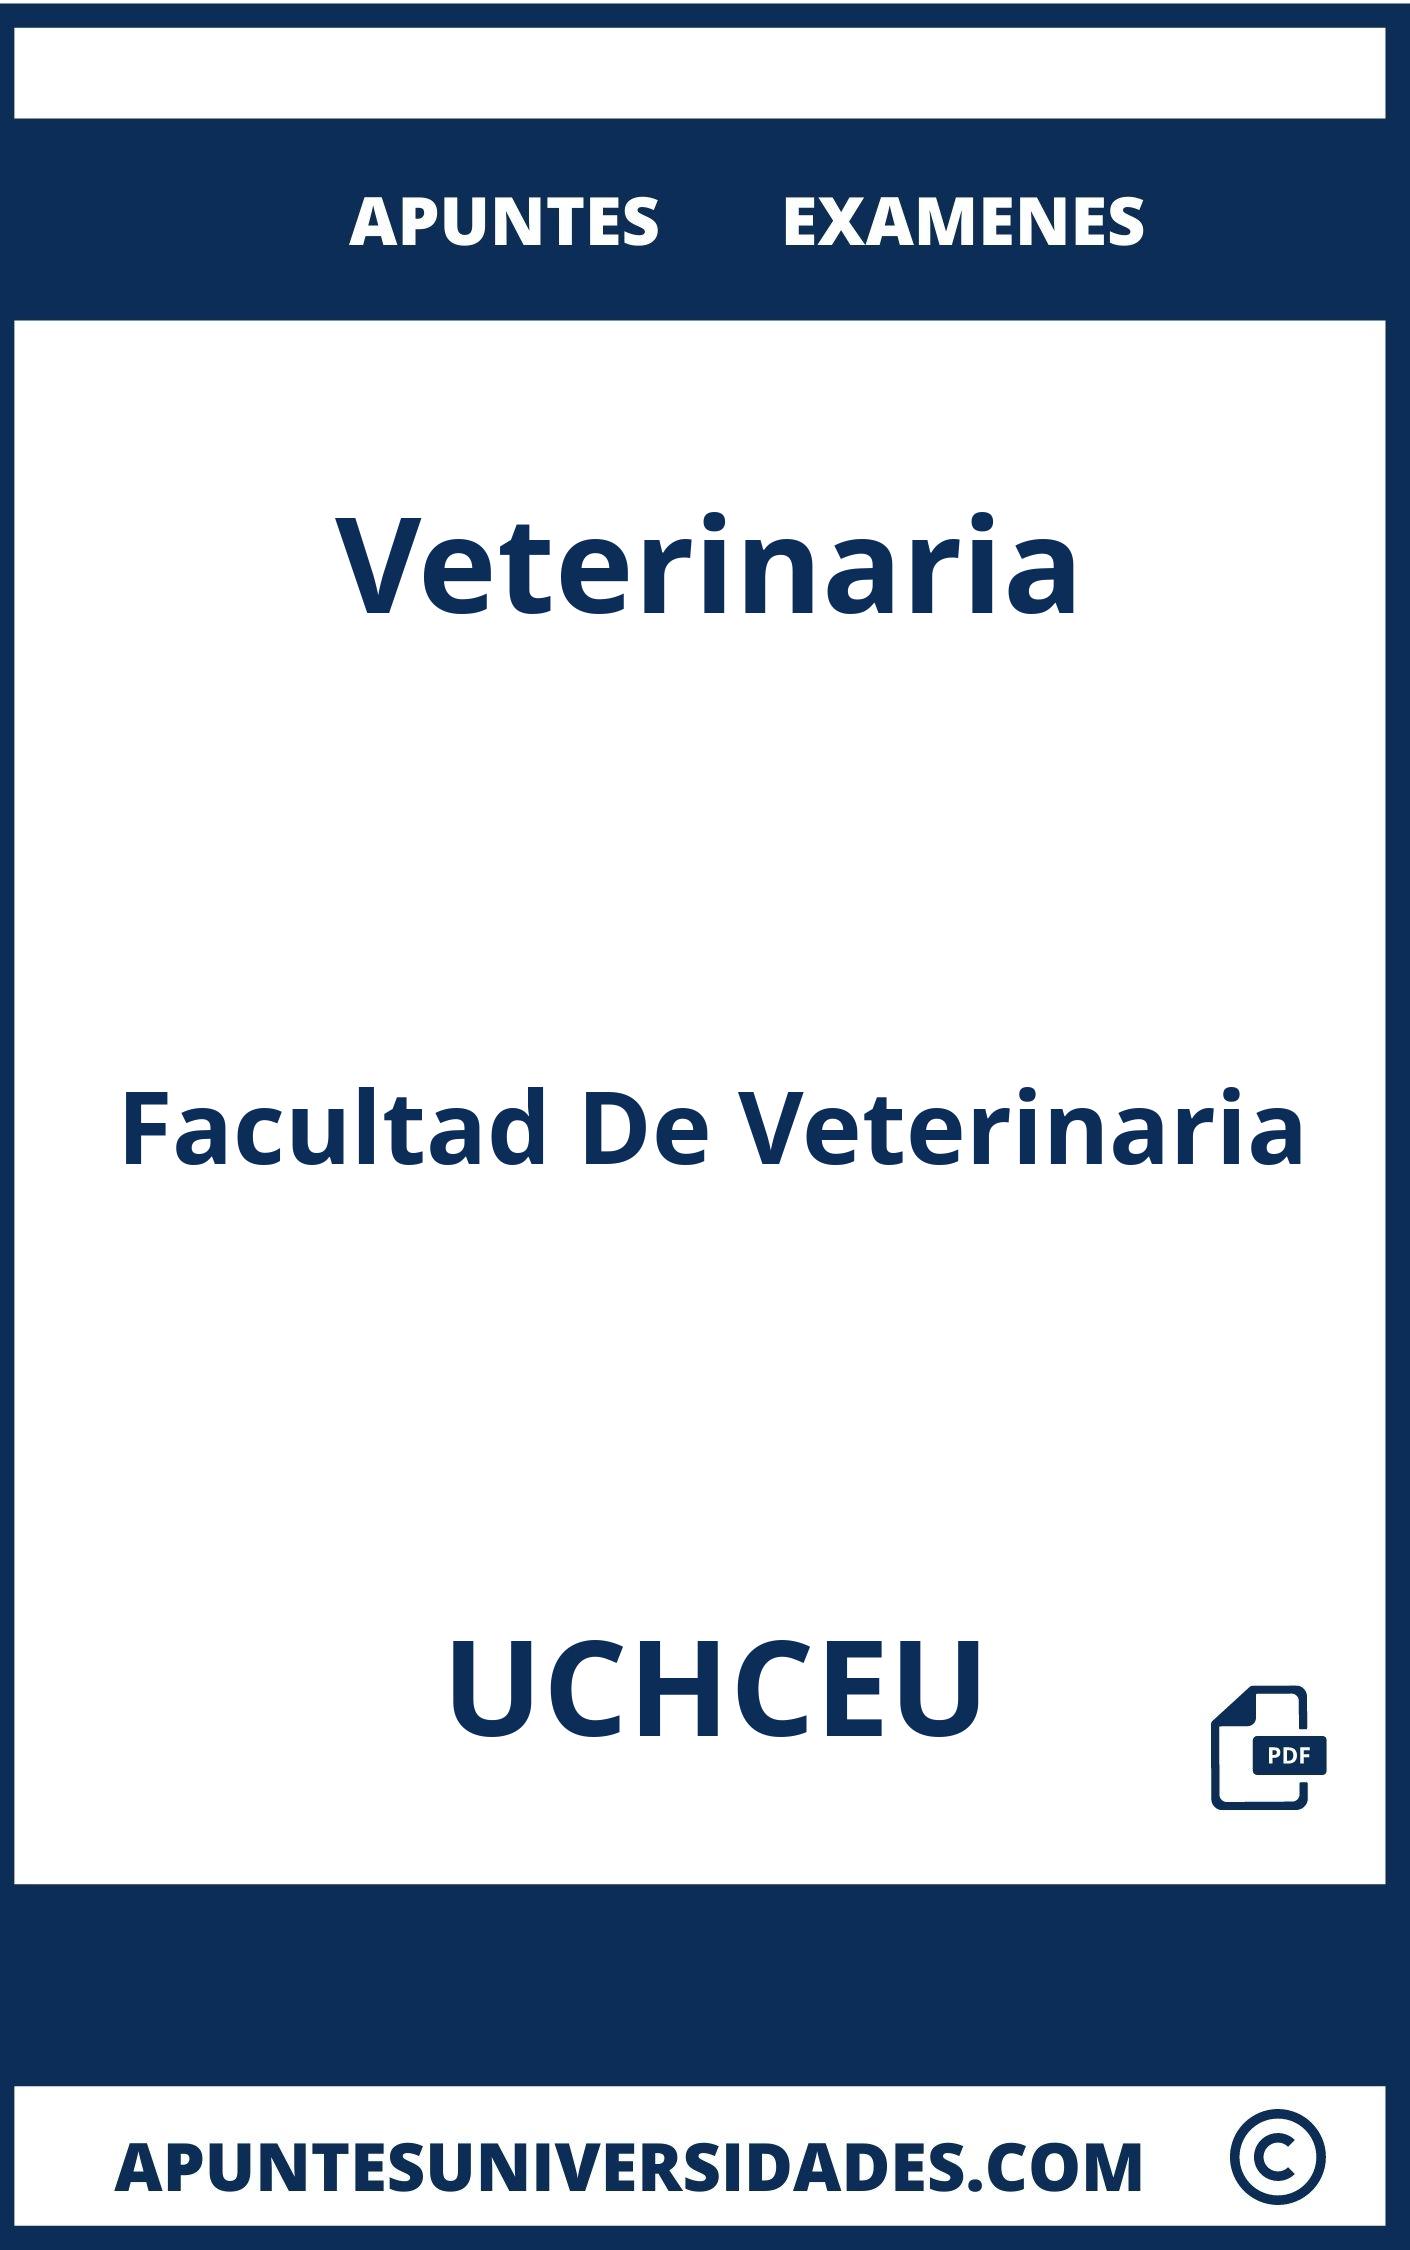 Apuntes y Examenes de Veterinaria UCHCEU